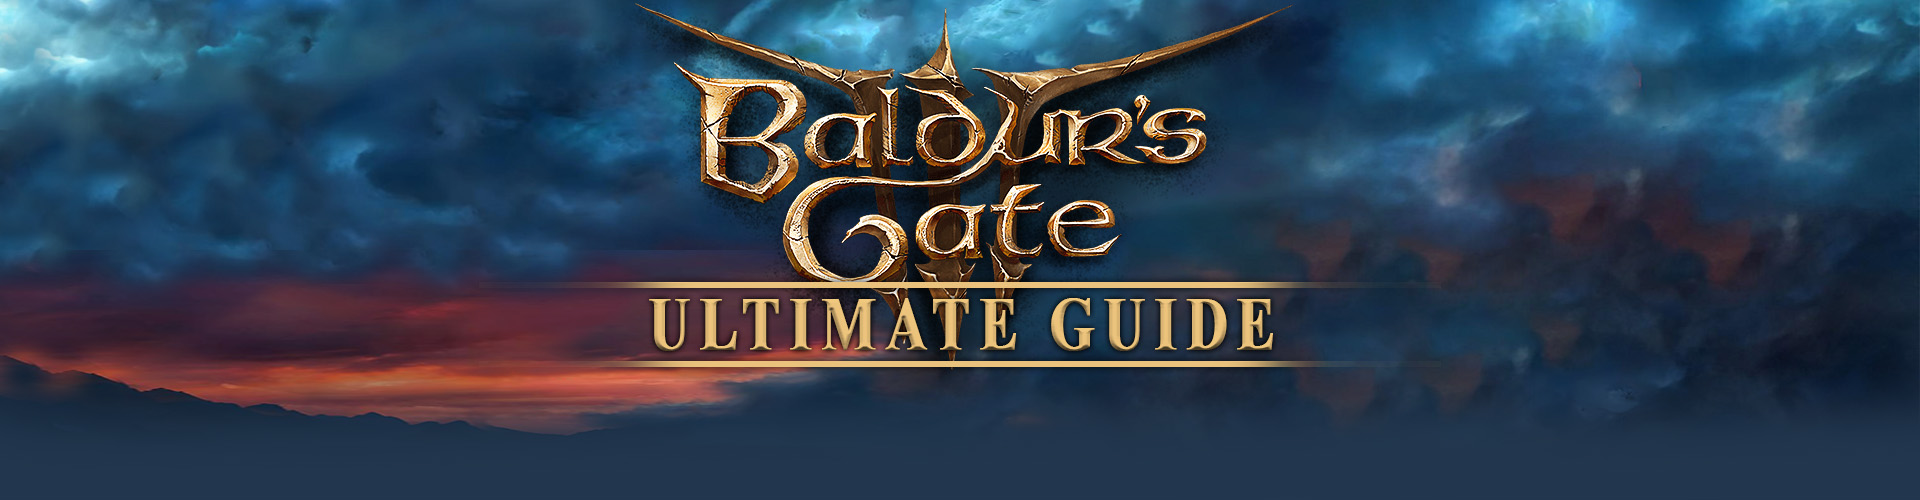 Games like Baldur’s Gate 3